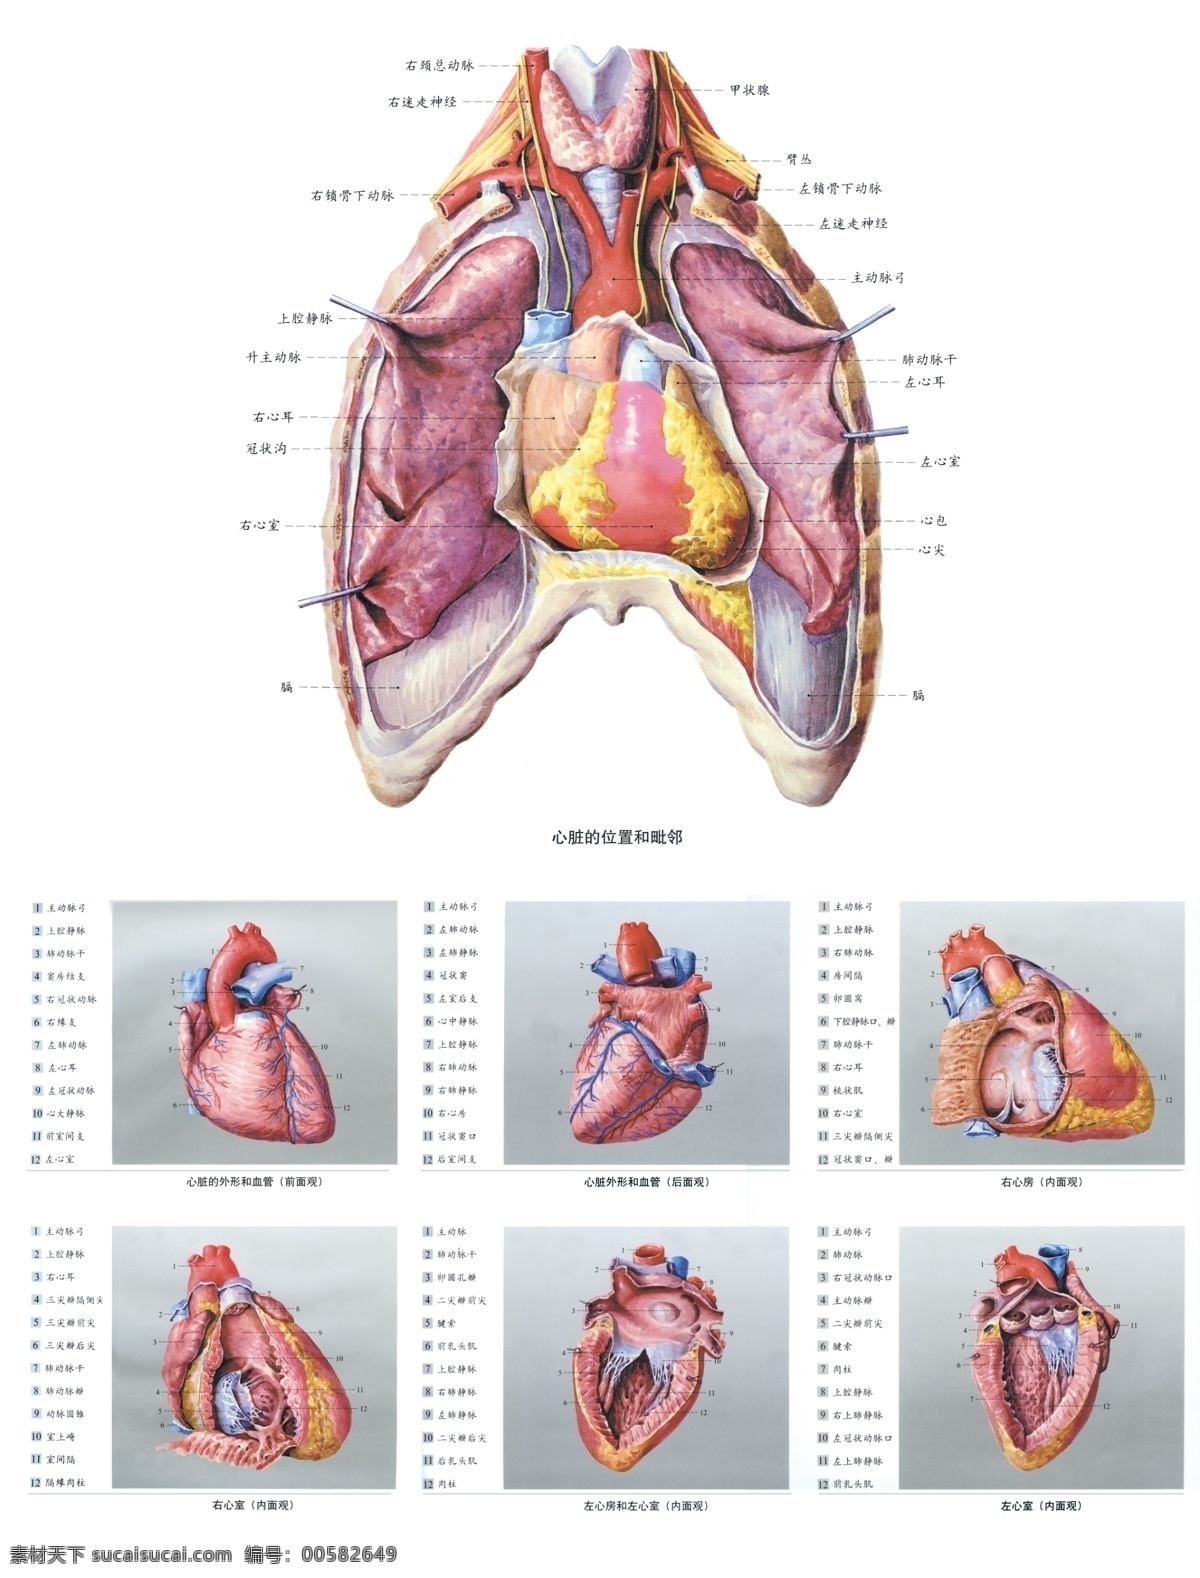 人体解剖图 中医 经络图 内脏分部图 人体构造图 医学图 人体内脏图 医学研究图 展板模板 广告设计模板 源文件